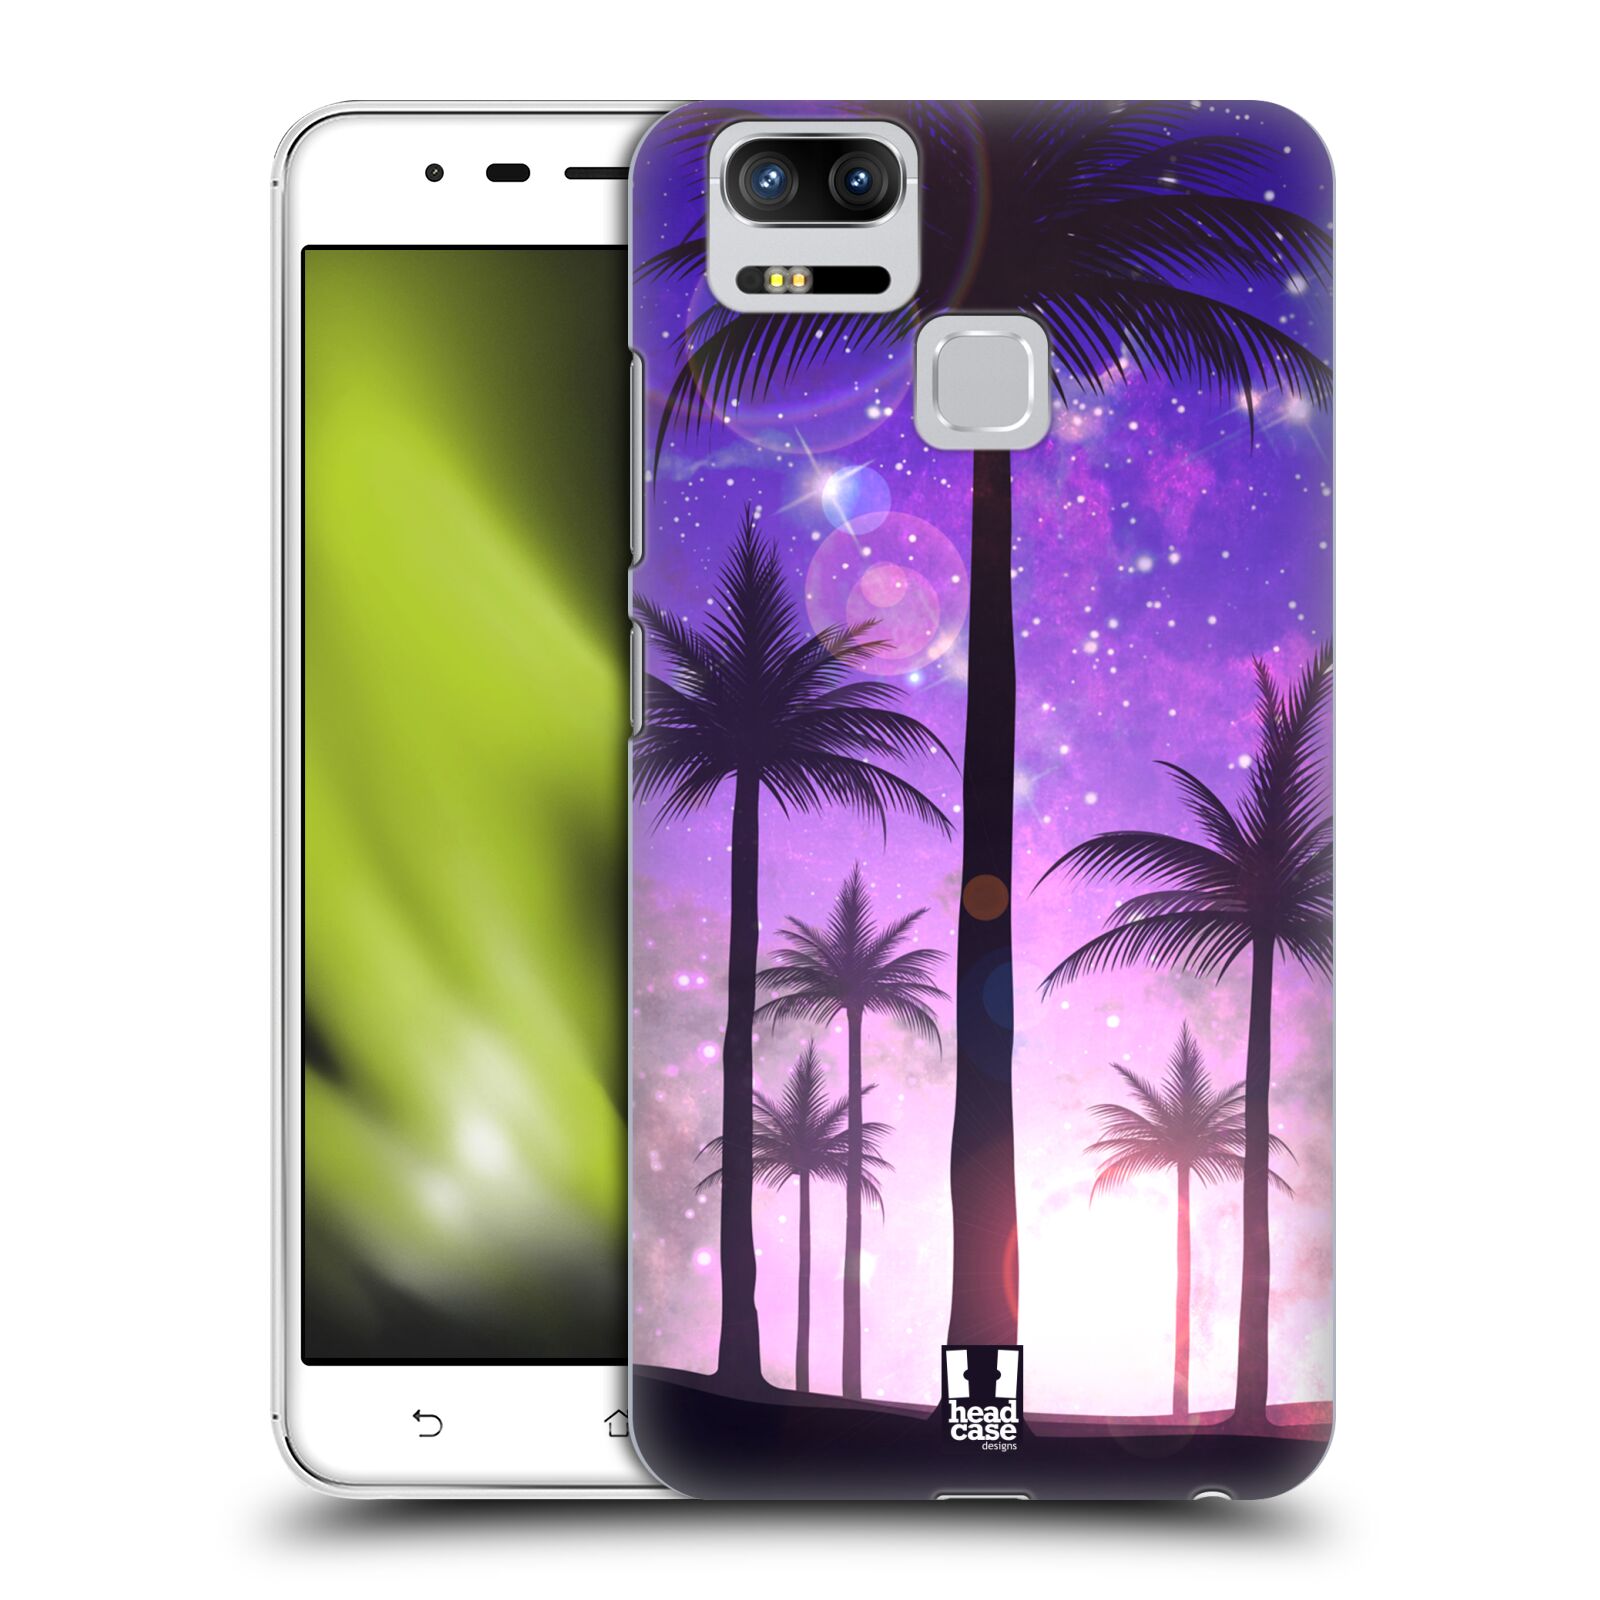 HEAD CASE plastový obal na mobil Asus Zenfone 3 Zoom ZE553KL vzor Kreslený motiv silueta moře a palmy FIALOVÁ